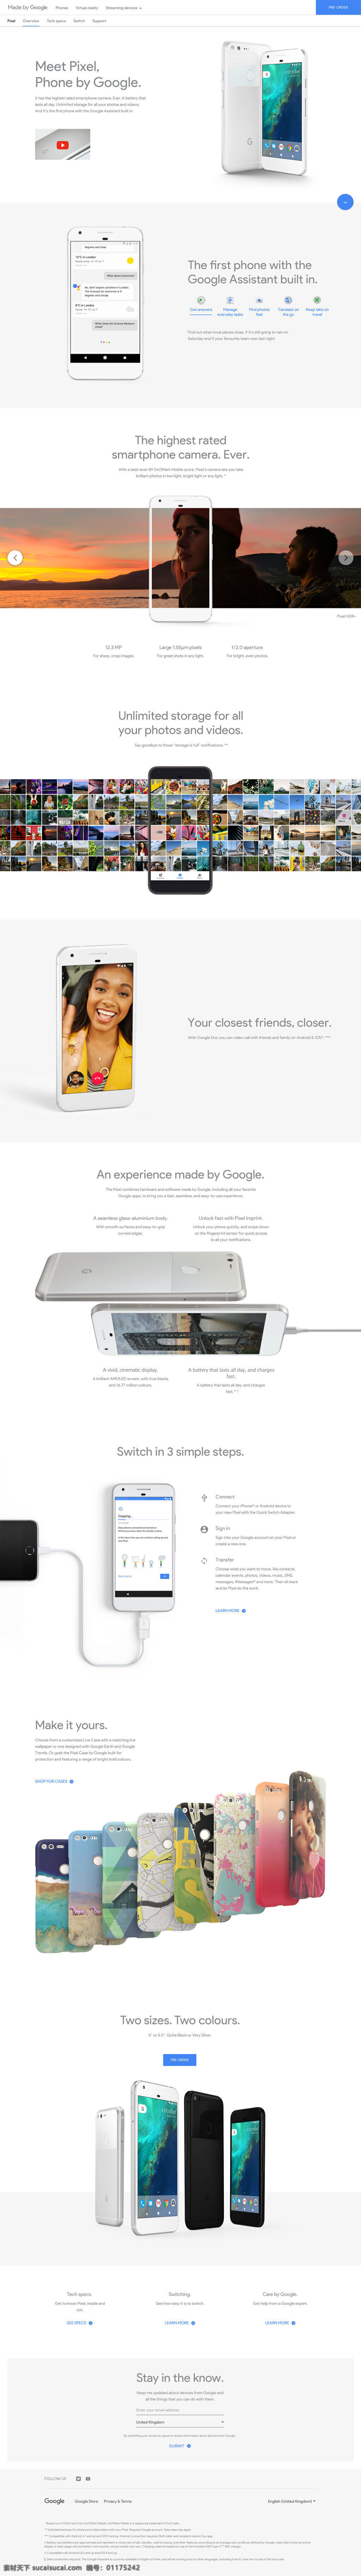 谷 歌手 机 着陆 页 sketch 谷歌 手机 在线 商城 时尚 简约 landing page 格式